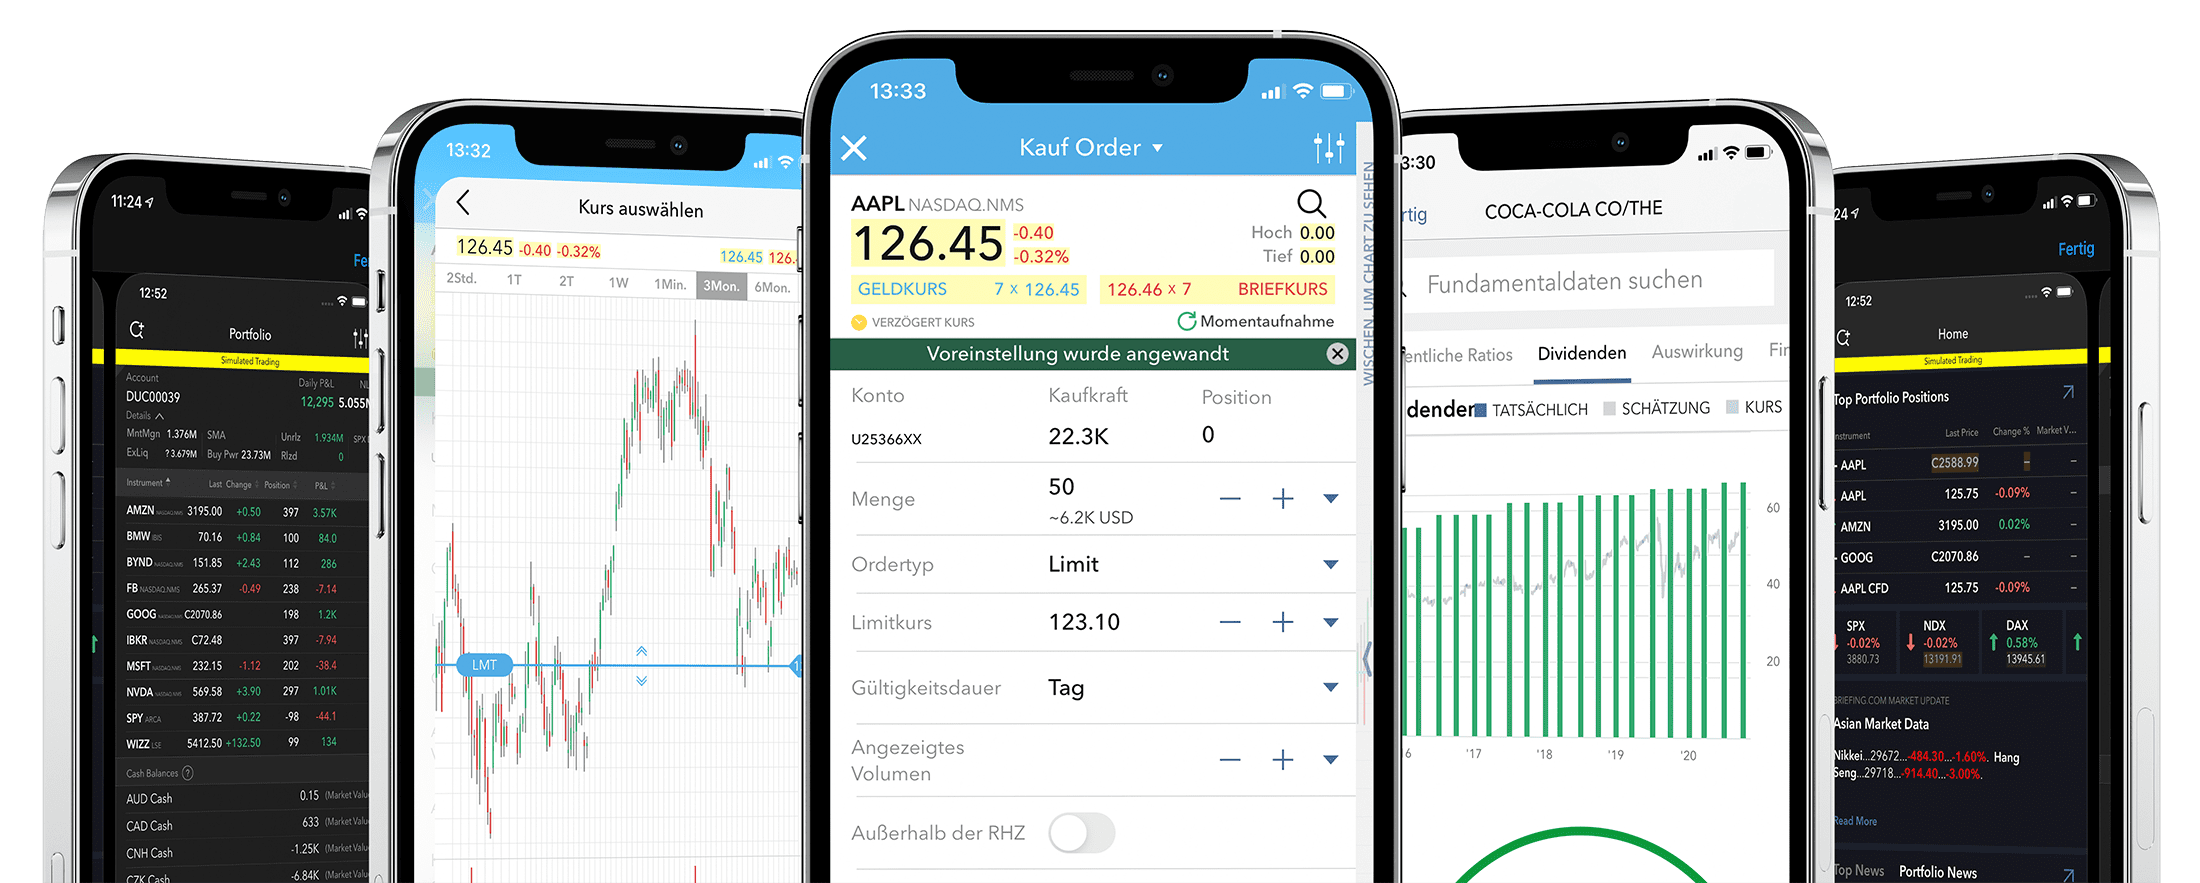 captrader_trading_app